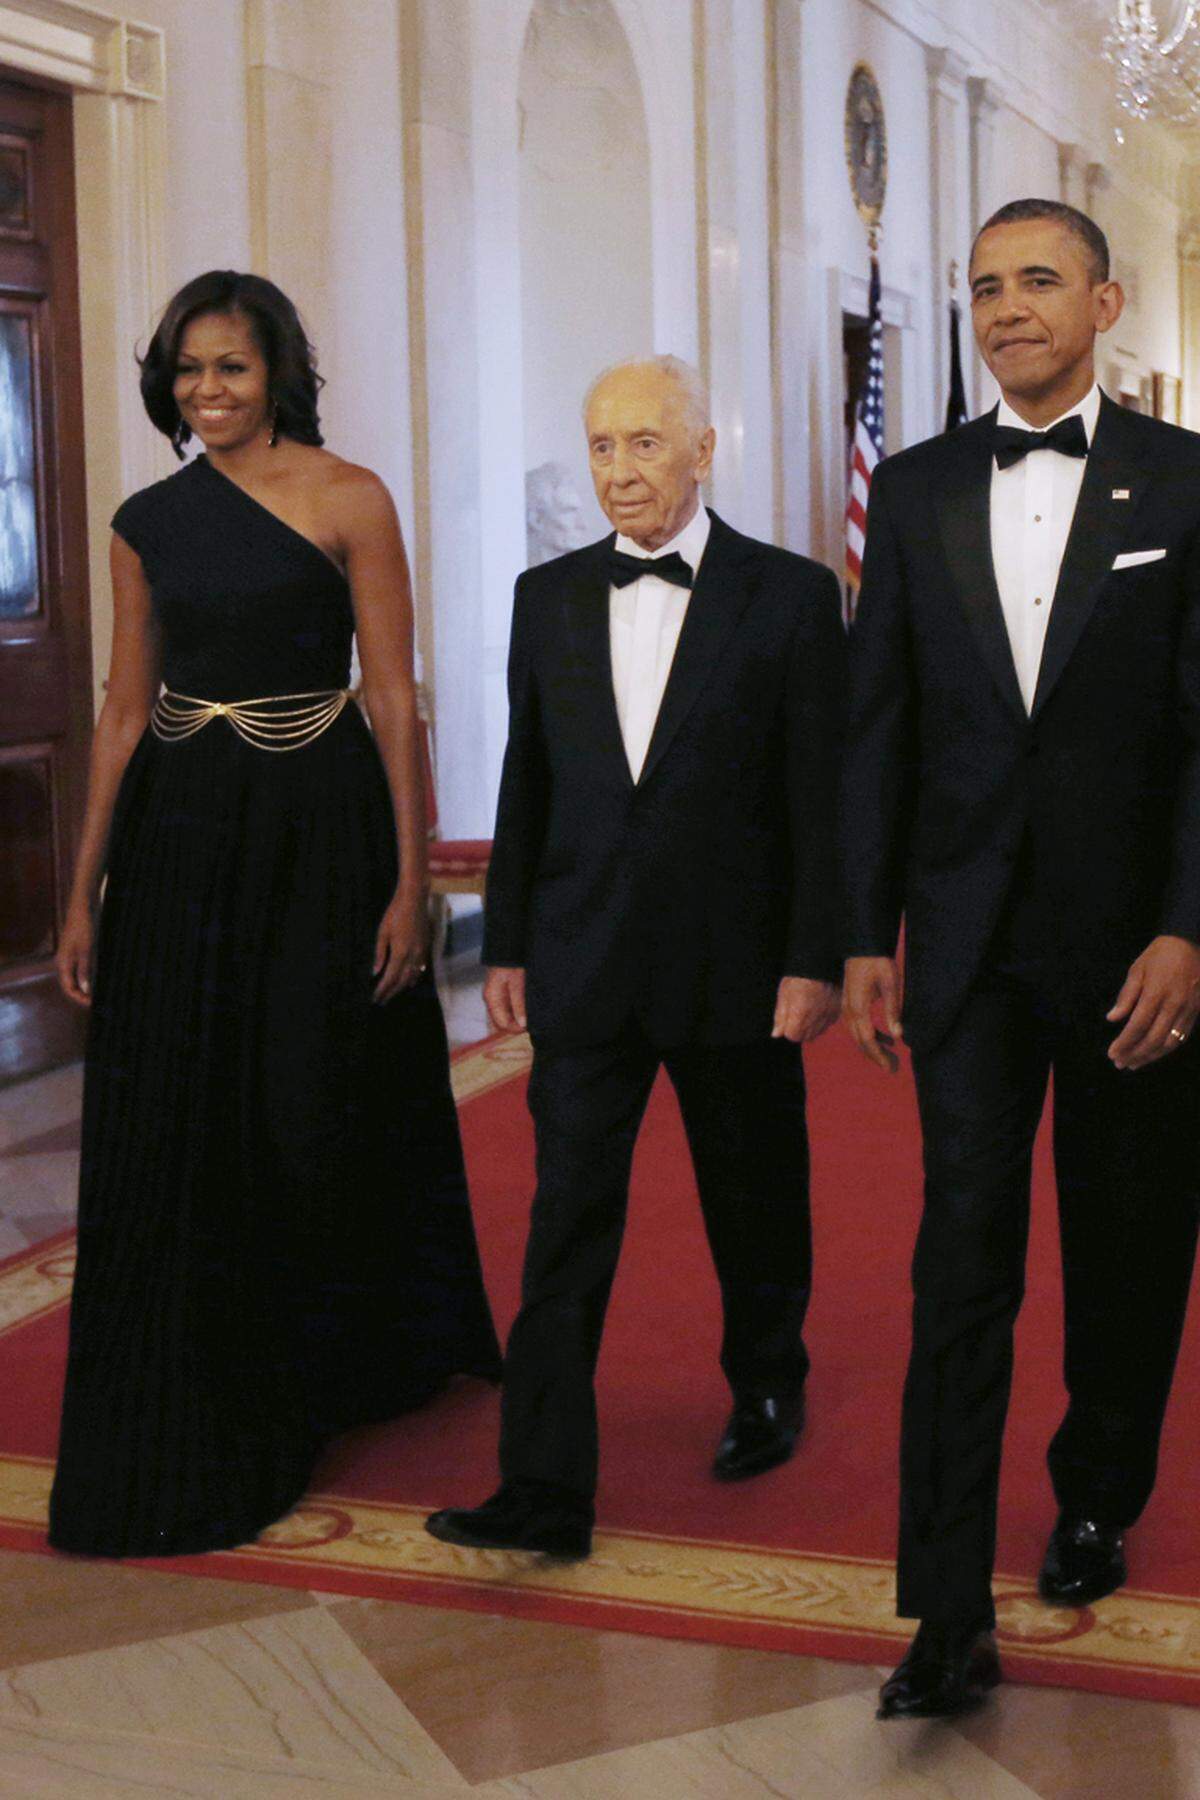 Bei einem East Room Dinner mit dem mittlerweile verstorbenen israelischen Ex-Präsidenten Shimon Peres kombinierte die First Lady eine schwarze Robe von Michael Kors mit einem Vintage-Gürtel von Dior.